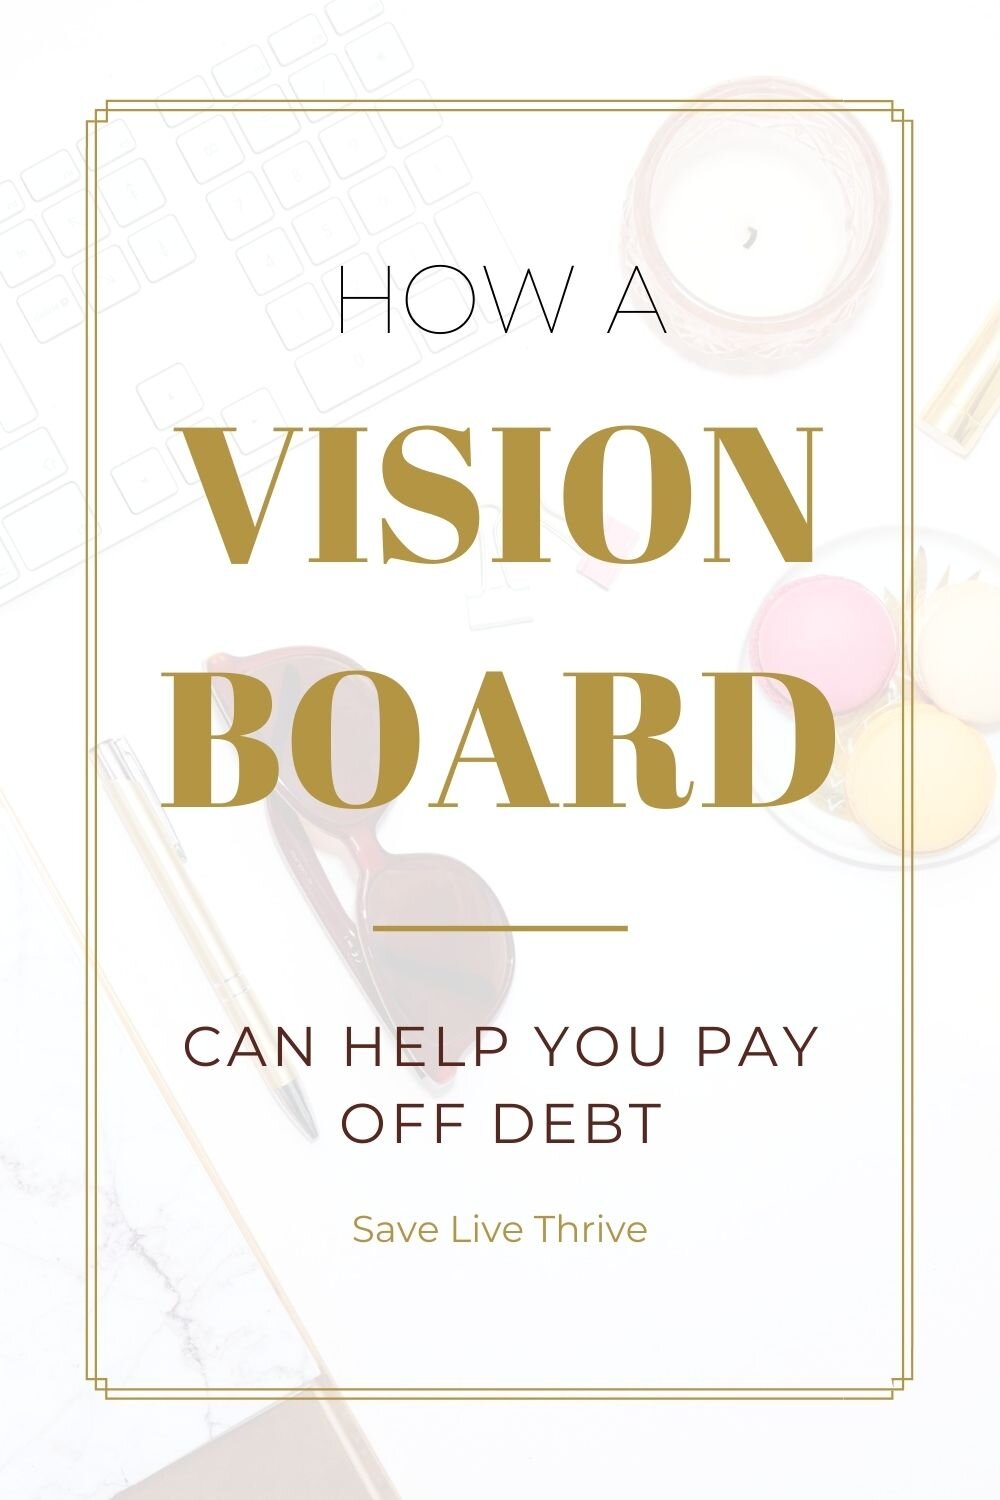 Debt Free Vision Board Printables